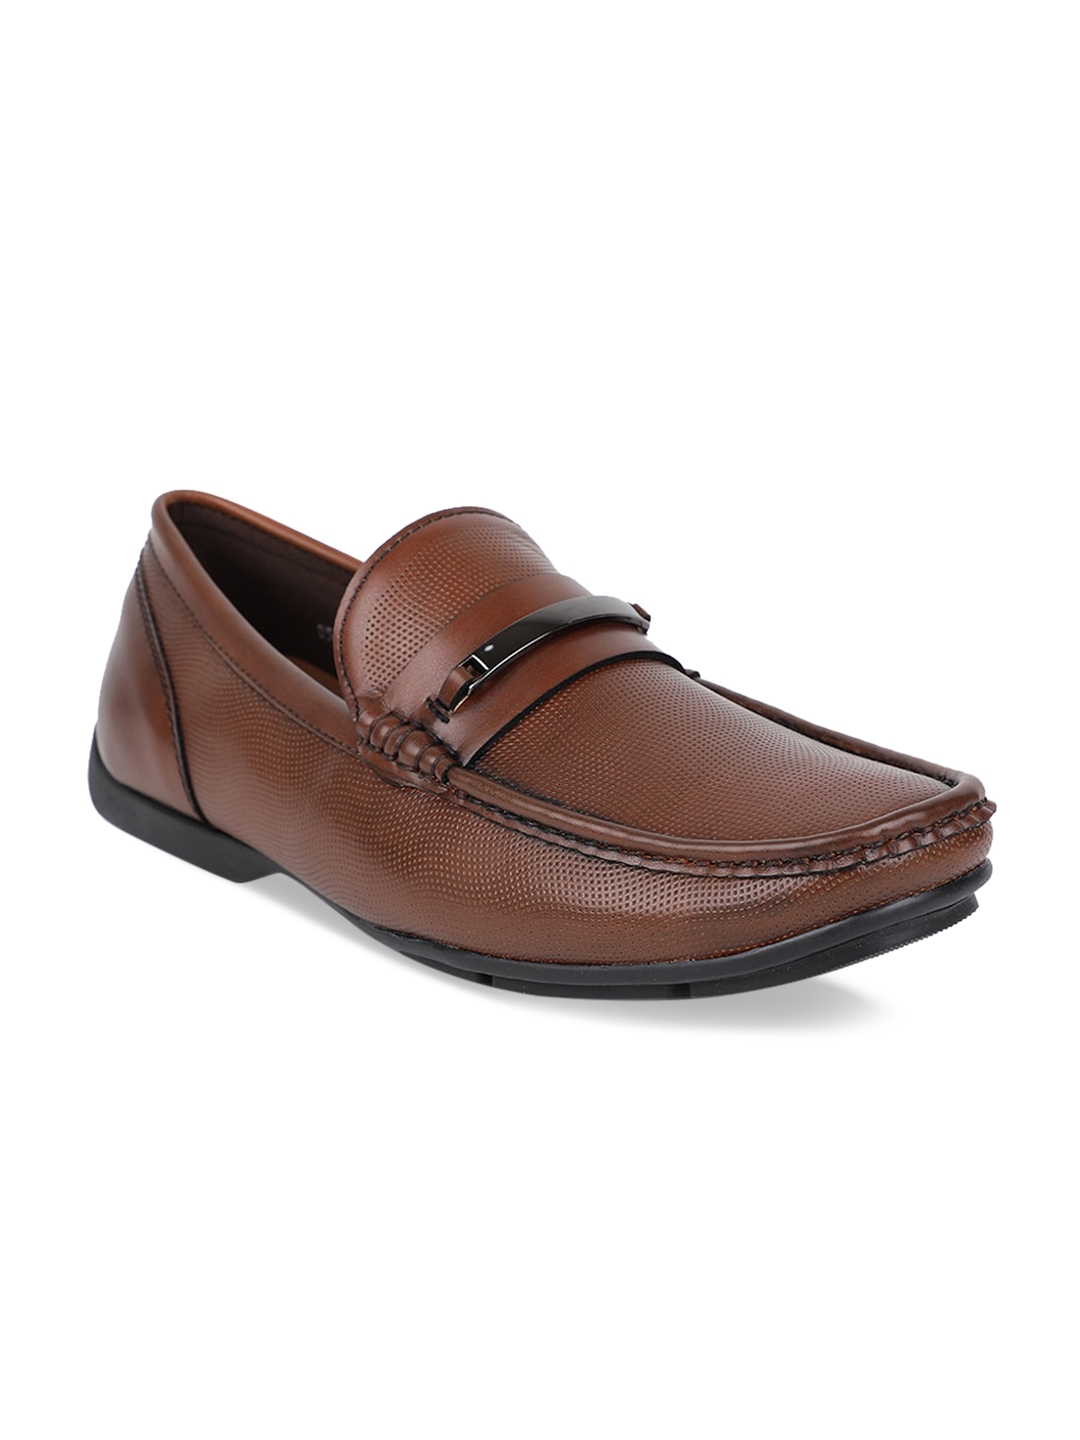 Buy Bata Men Brown Solid Formal Loafers - Formal Shoes for Men 12420716 ...